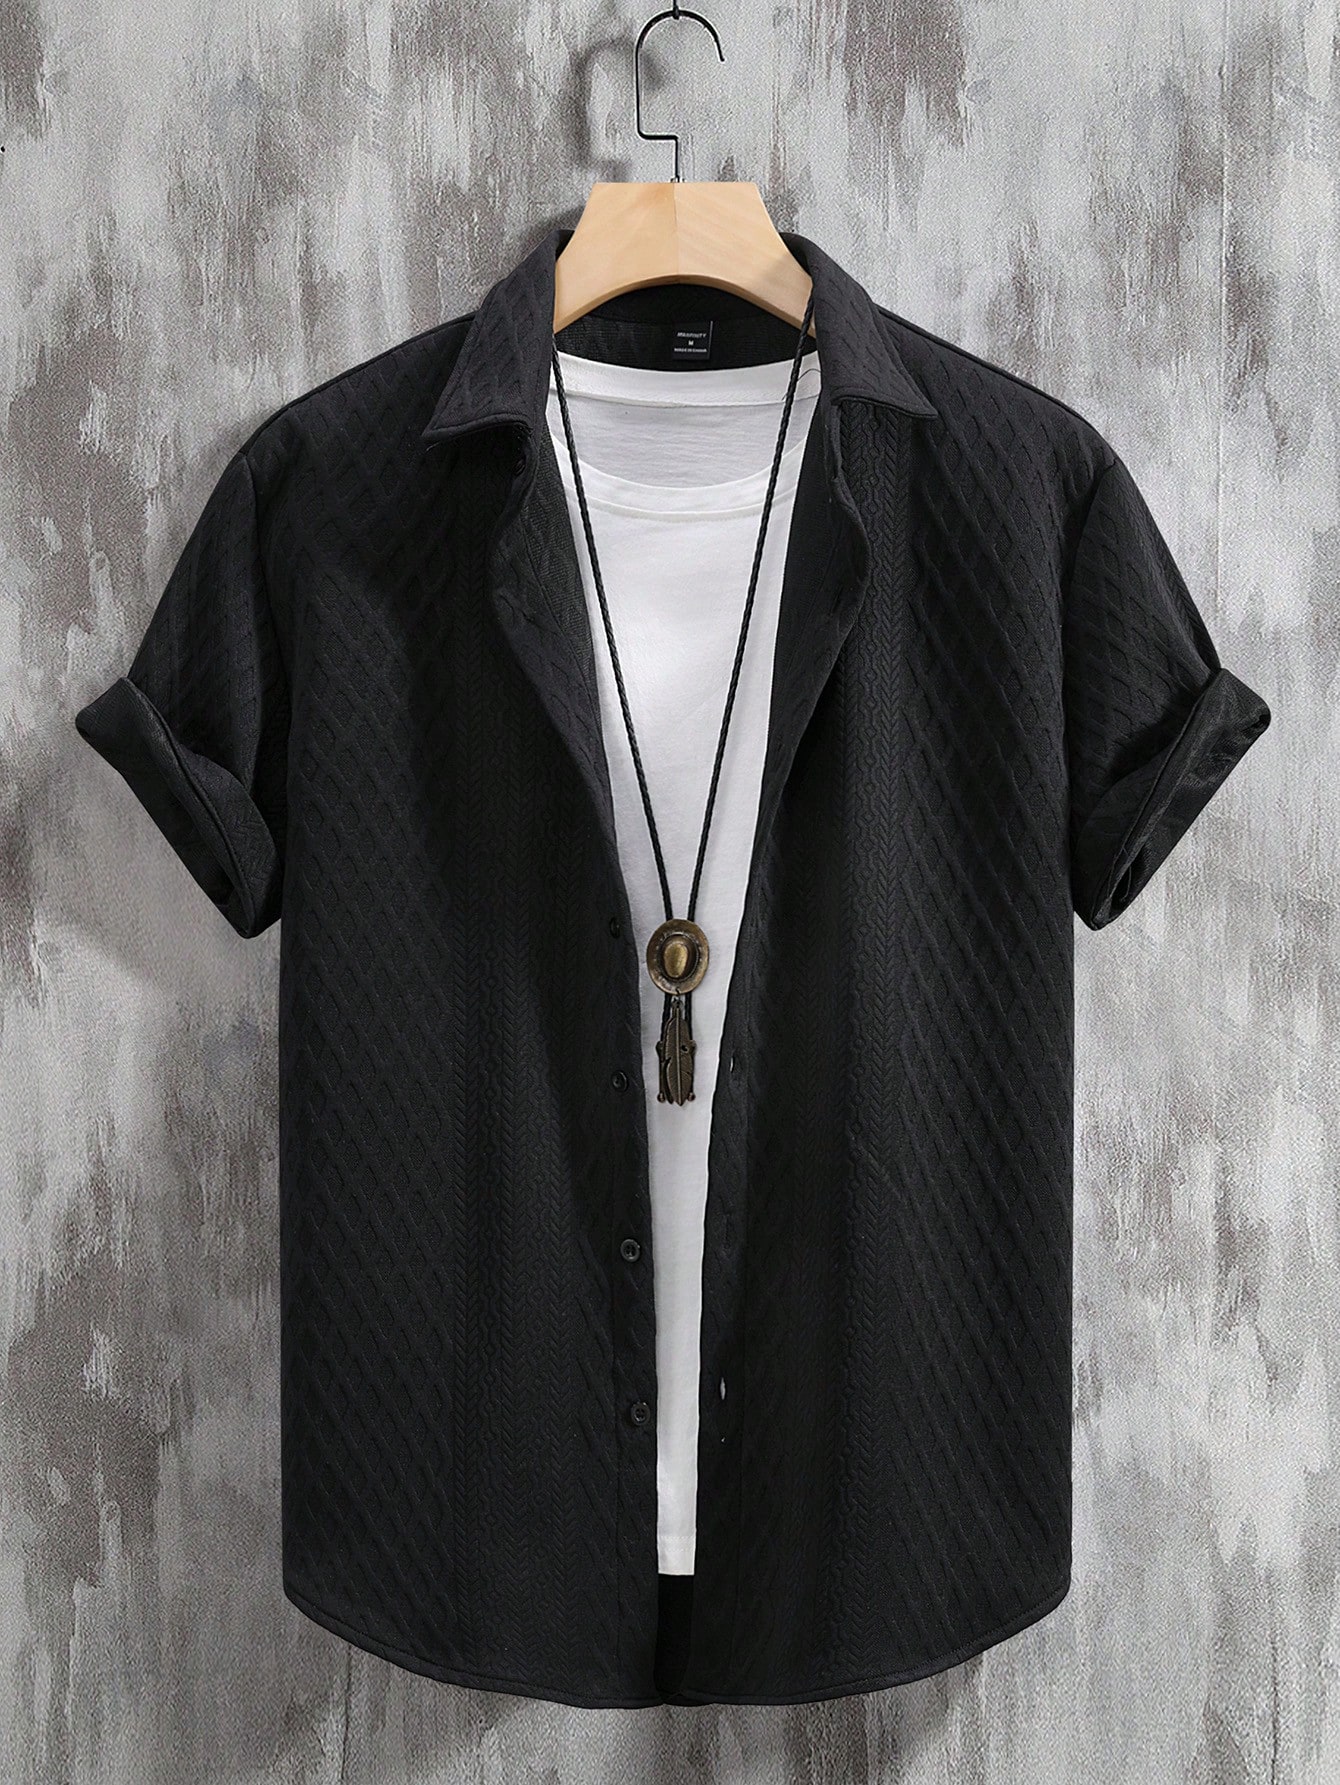 Мужская рубашка с коротким рукавом с тиснением сердца Manfinity Hypemode, черный текстурированная однотонная мужская футболка поло cb drytec genre cutter